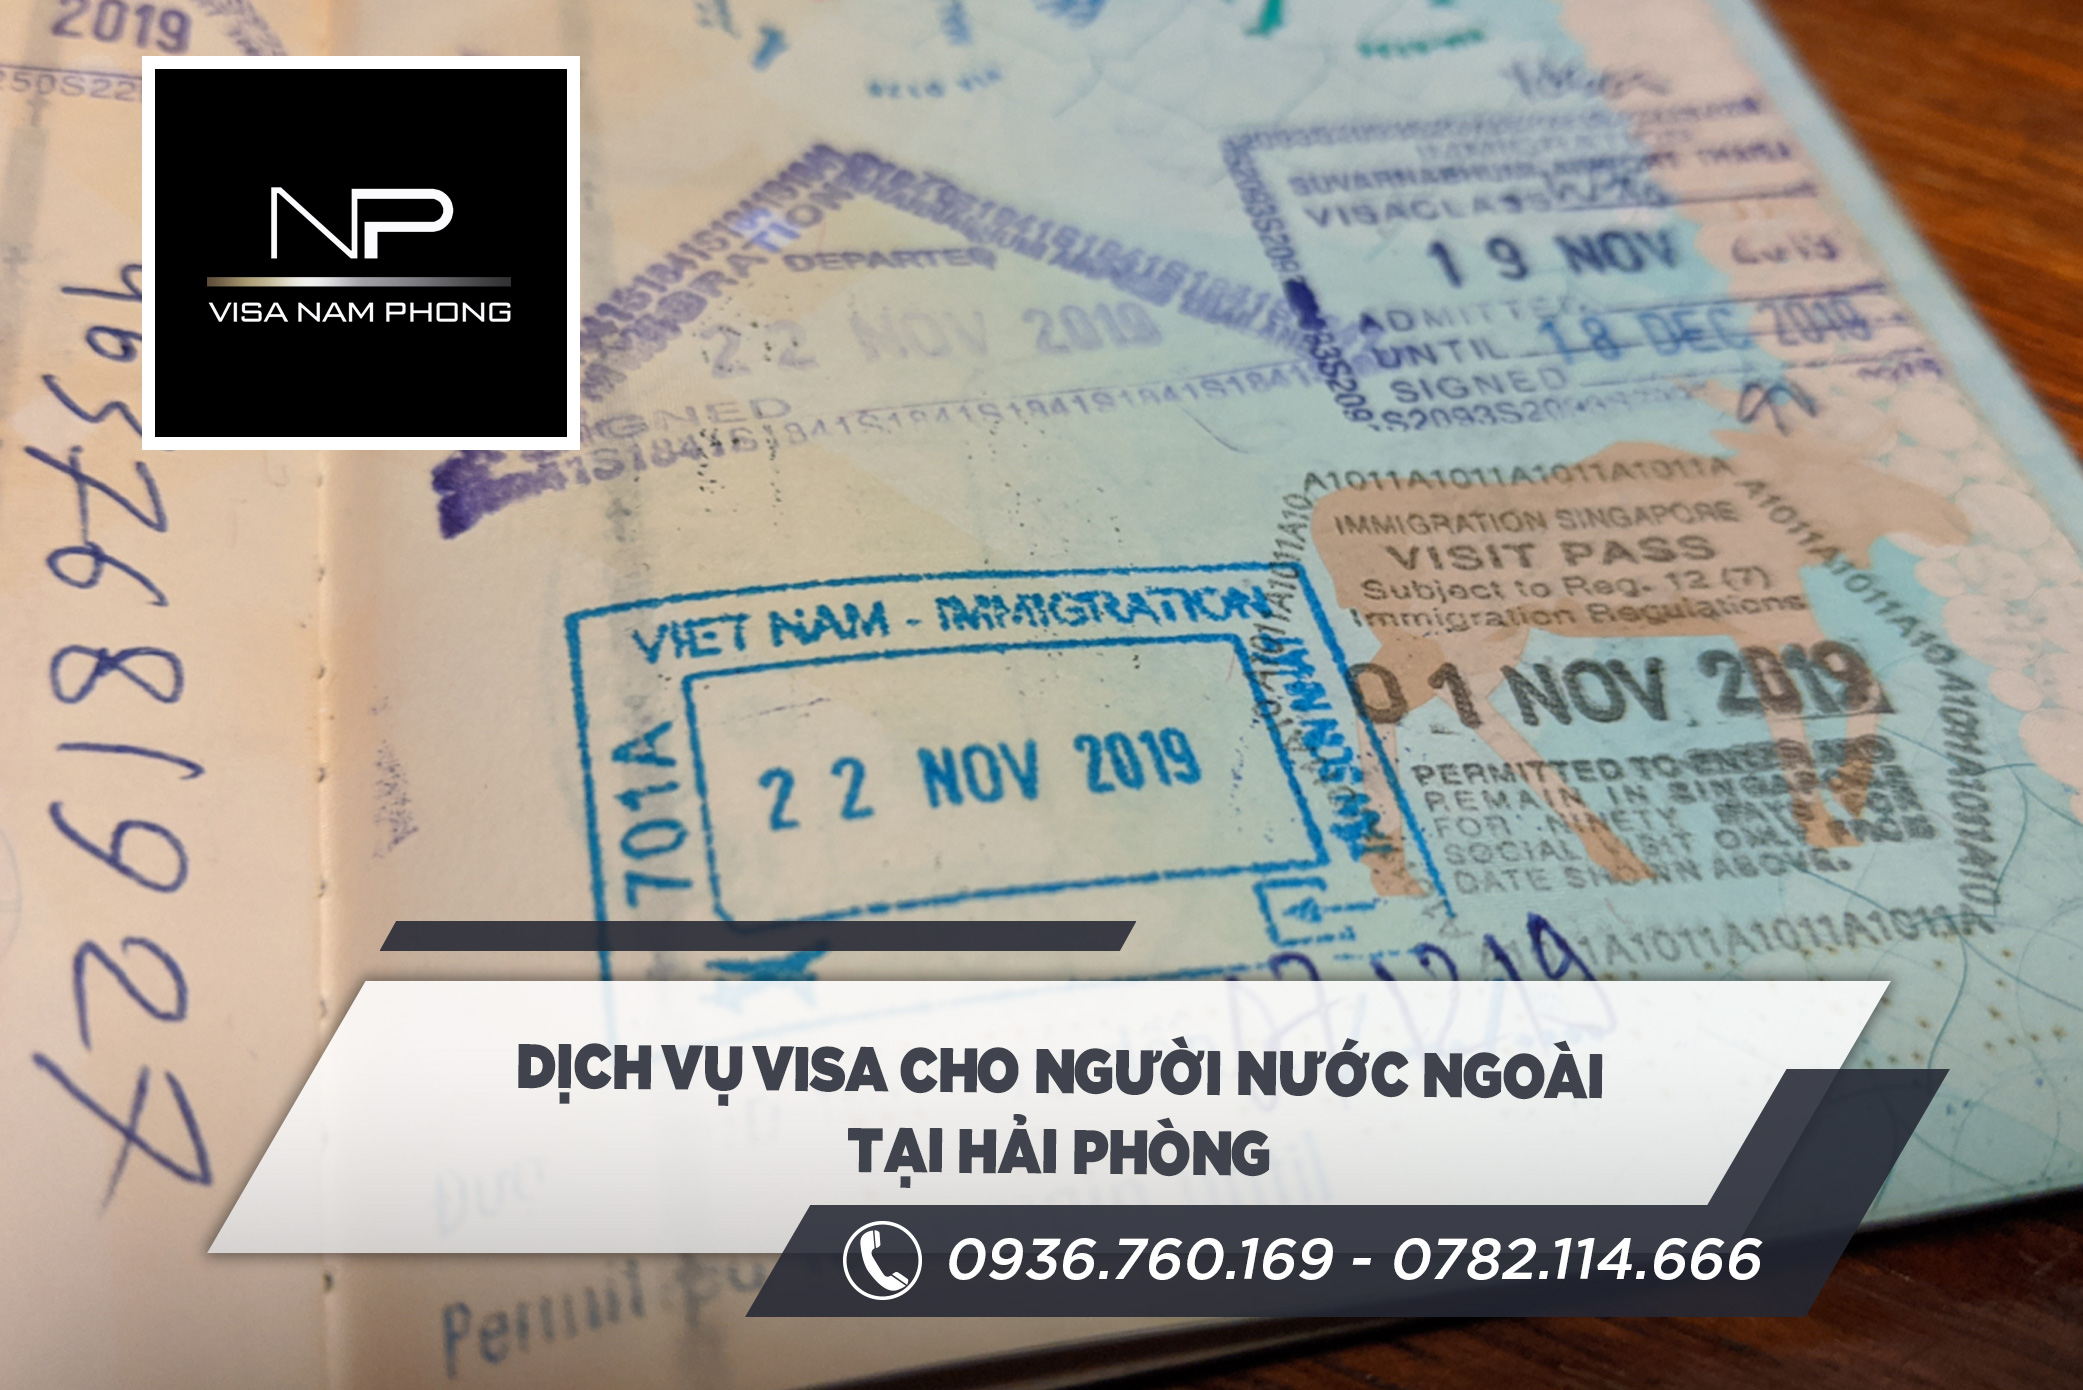 dịch vụ visa cho người nước ngoài tại hải phòng